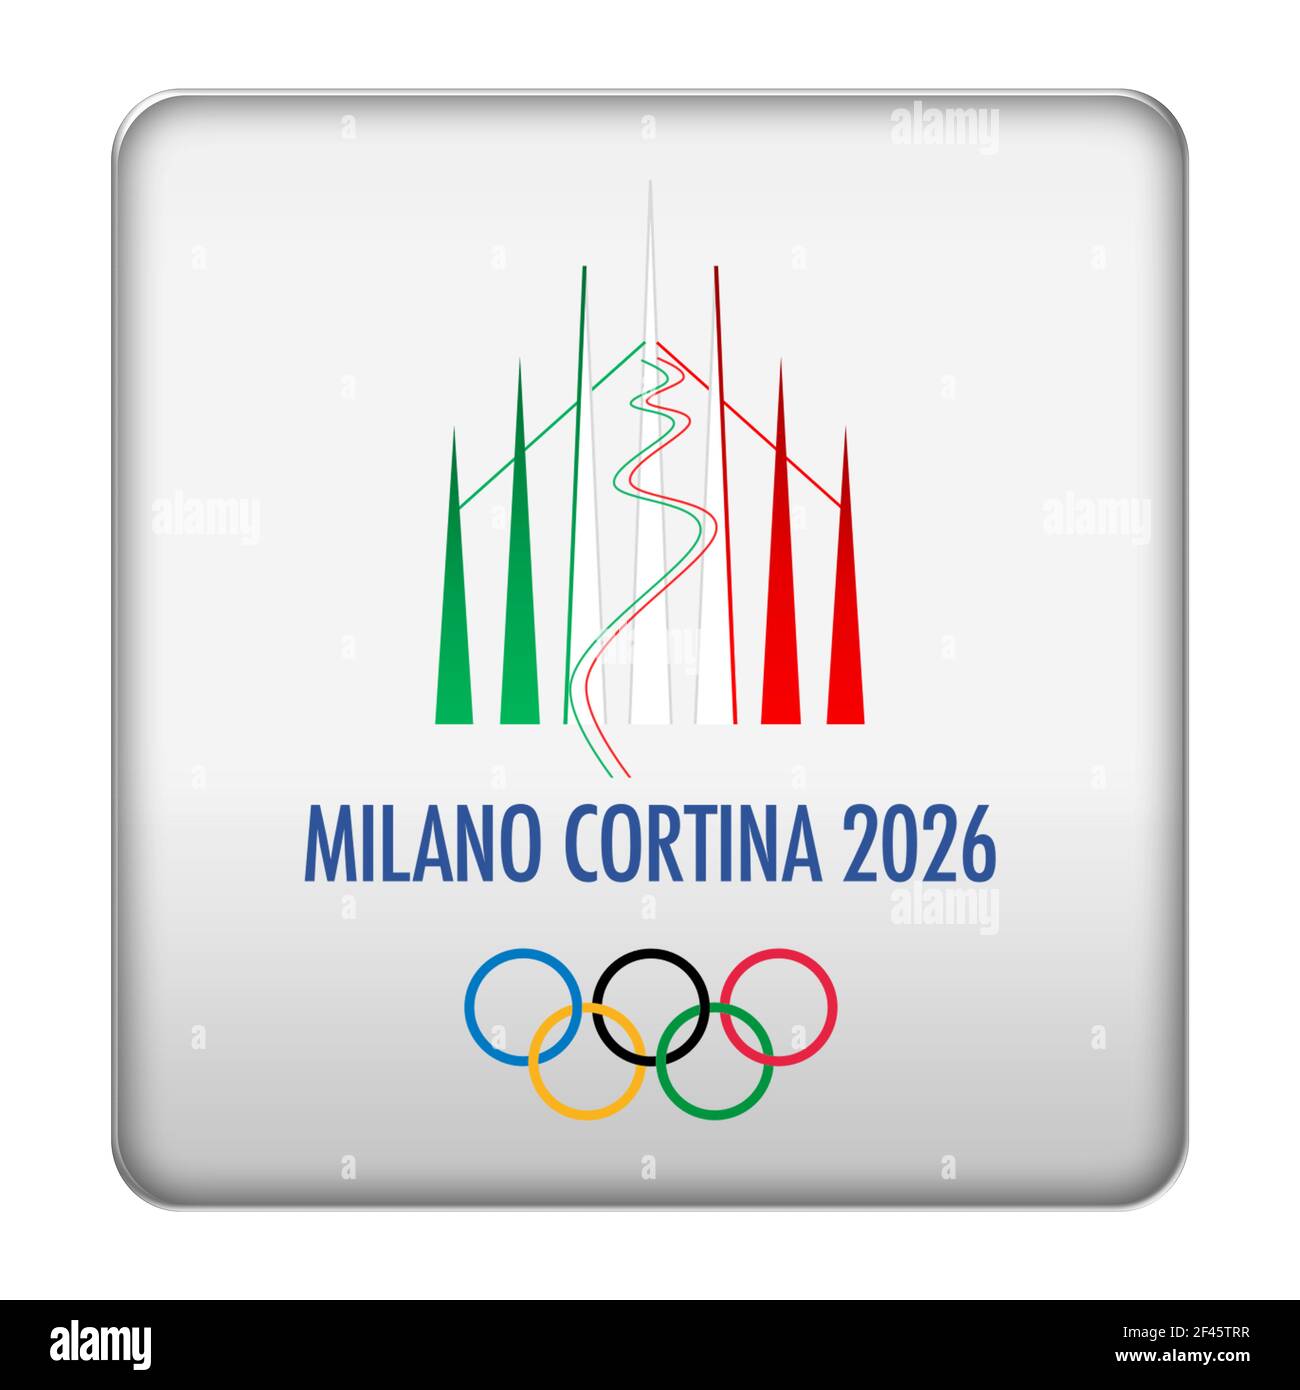 Winter Olympics 2026 Italy Milan Cortina Stock Photo